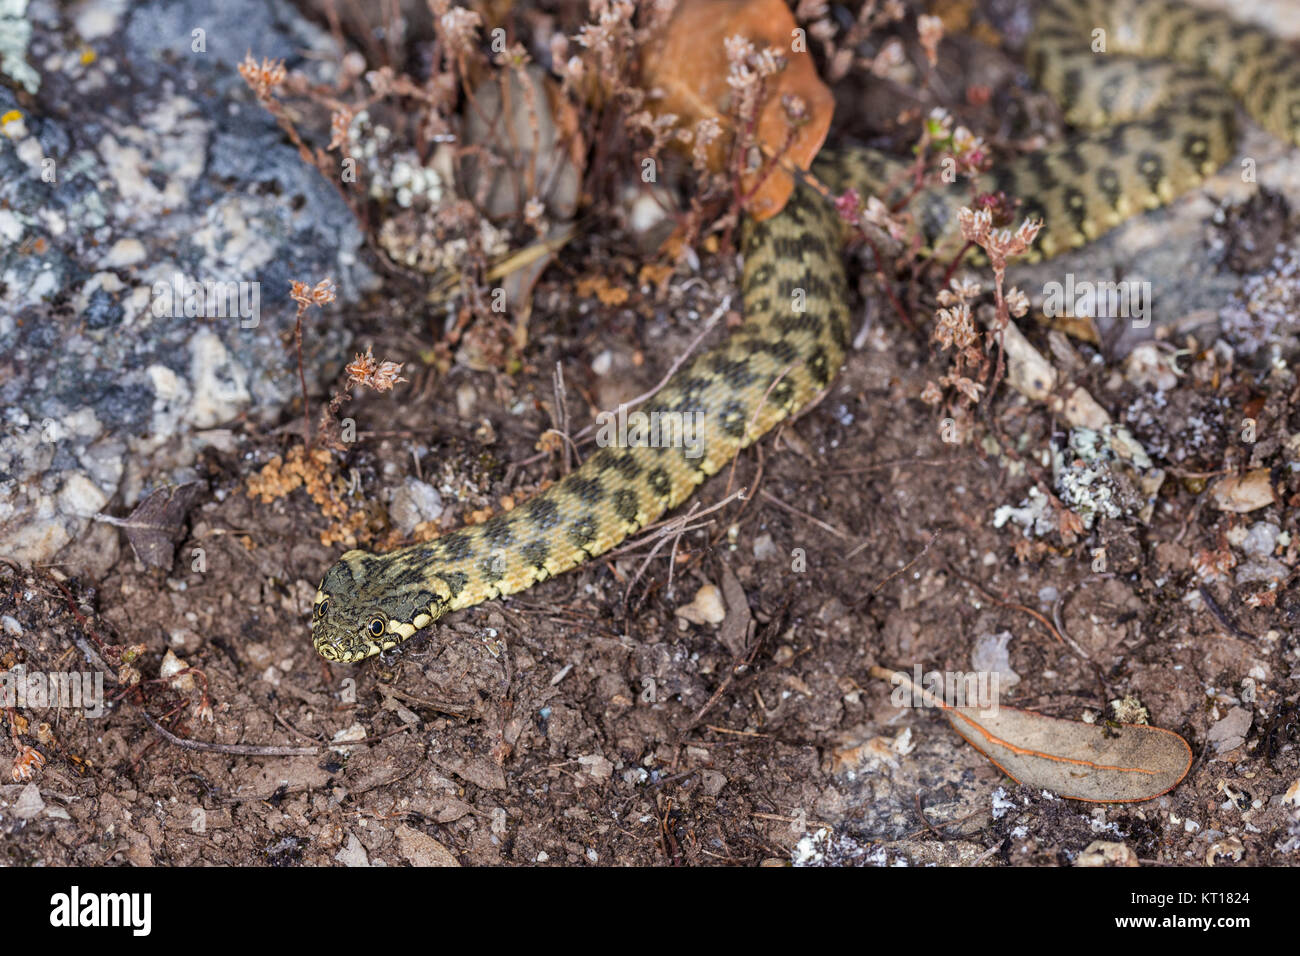 Natrix maura est un serpent d'eau nicheur dans certaines régions (camargue, du genre Natrix. Son nom commun est viperine snake viperine ou serpent d'eau. Banque D'Images